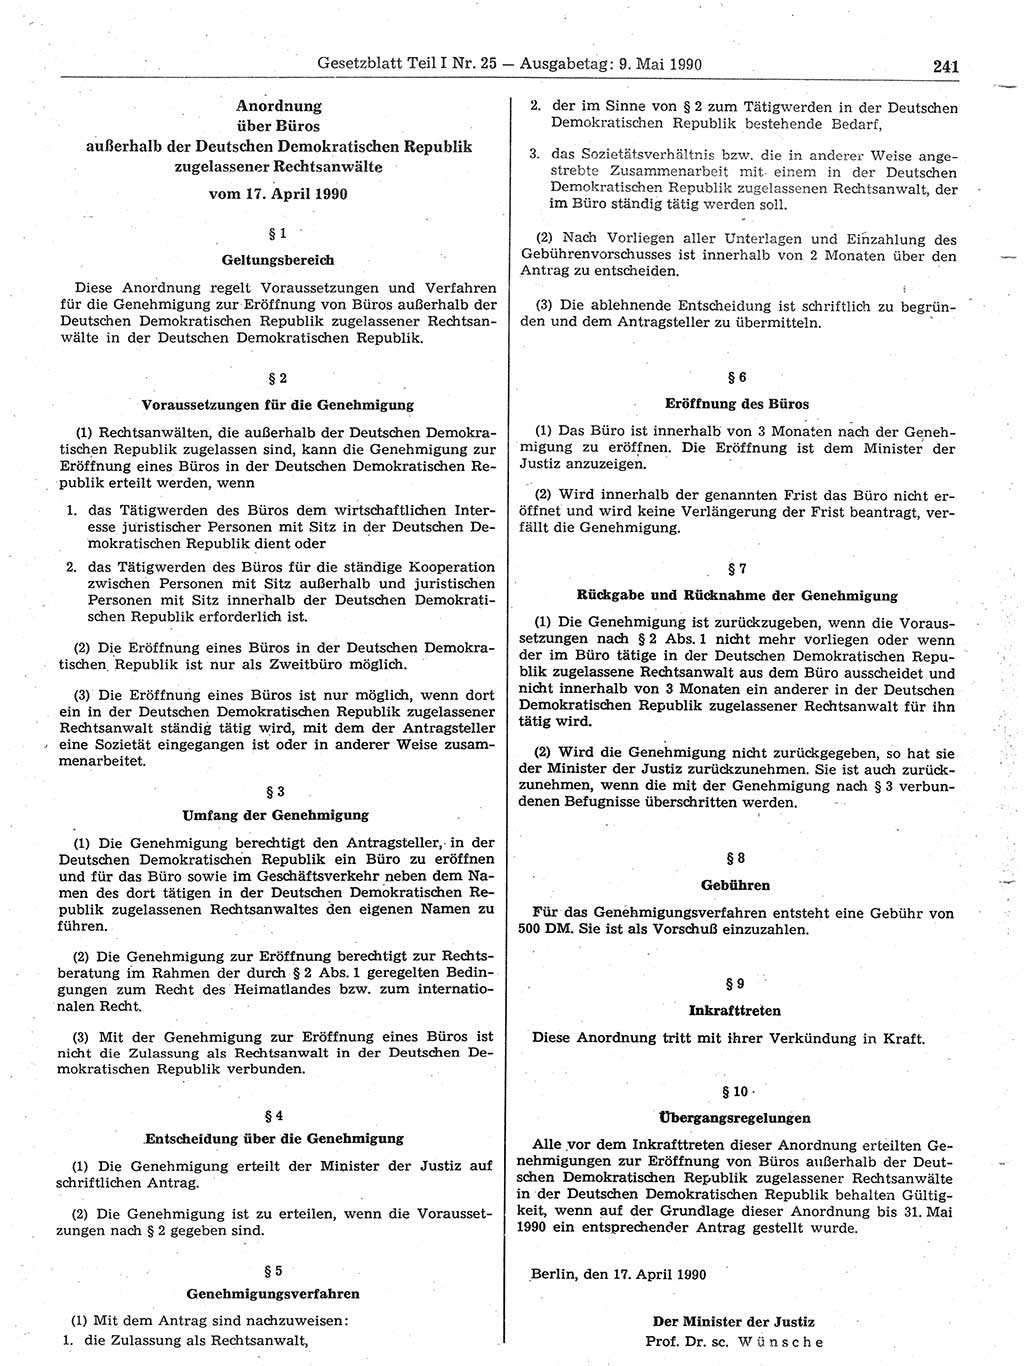 Gesetzblatt (GBl.) der Deutschen Demokratischen Republik (DDR) Teil Ⅰ 1990, Seite 241 (GBl. DDR Ⅰ 1990, S. 241)